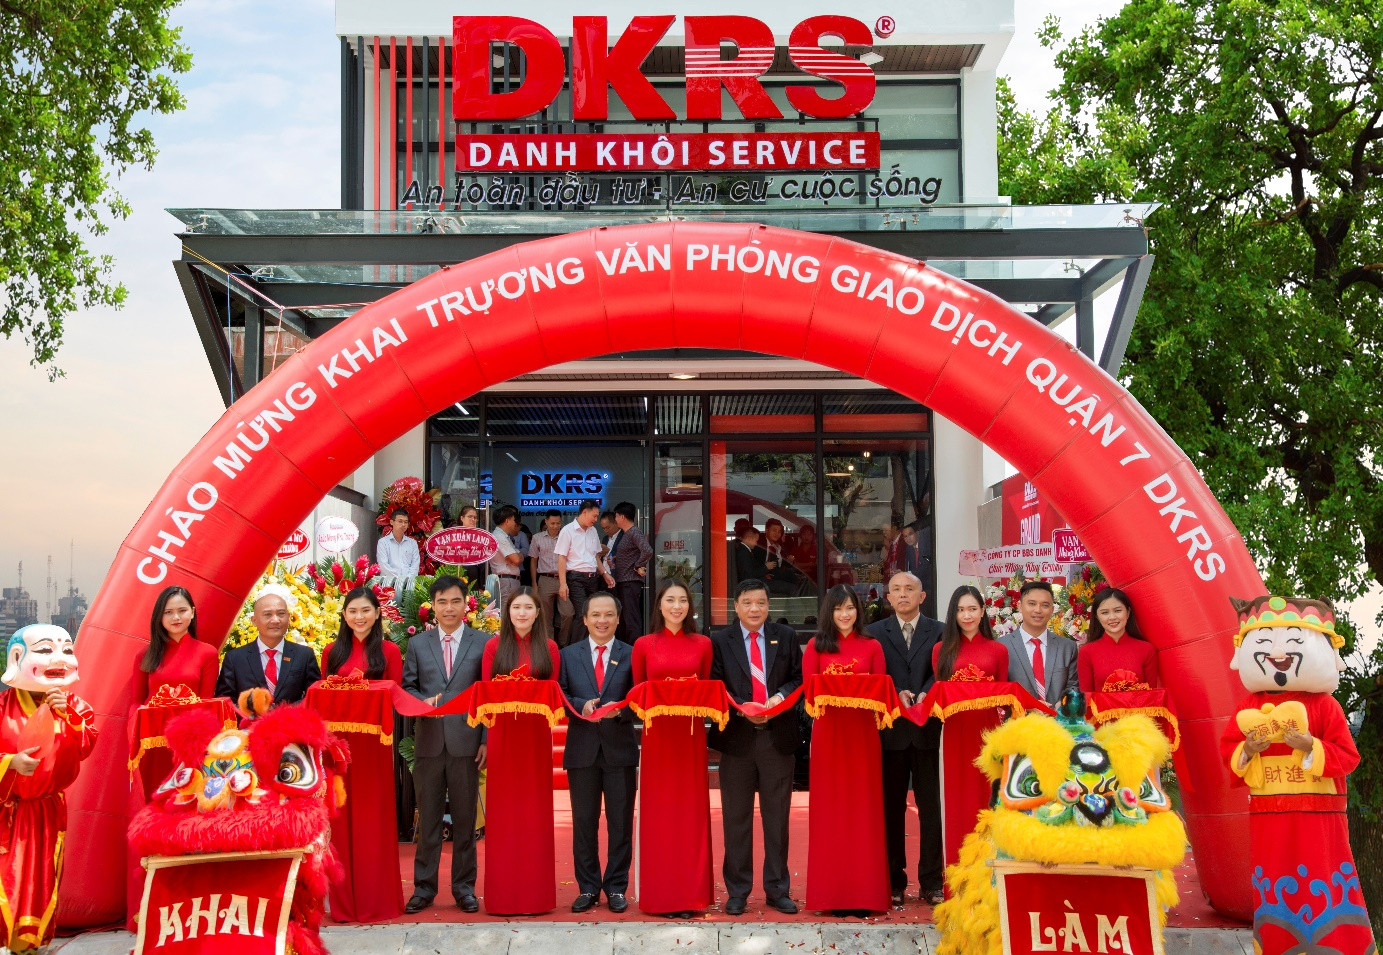 DKRS khai trương văn phòng giao dịch quận 7